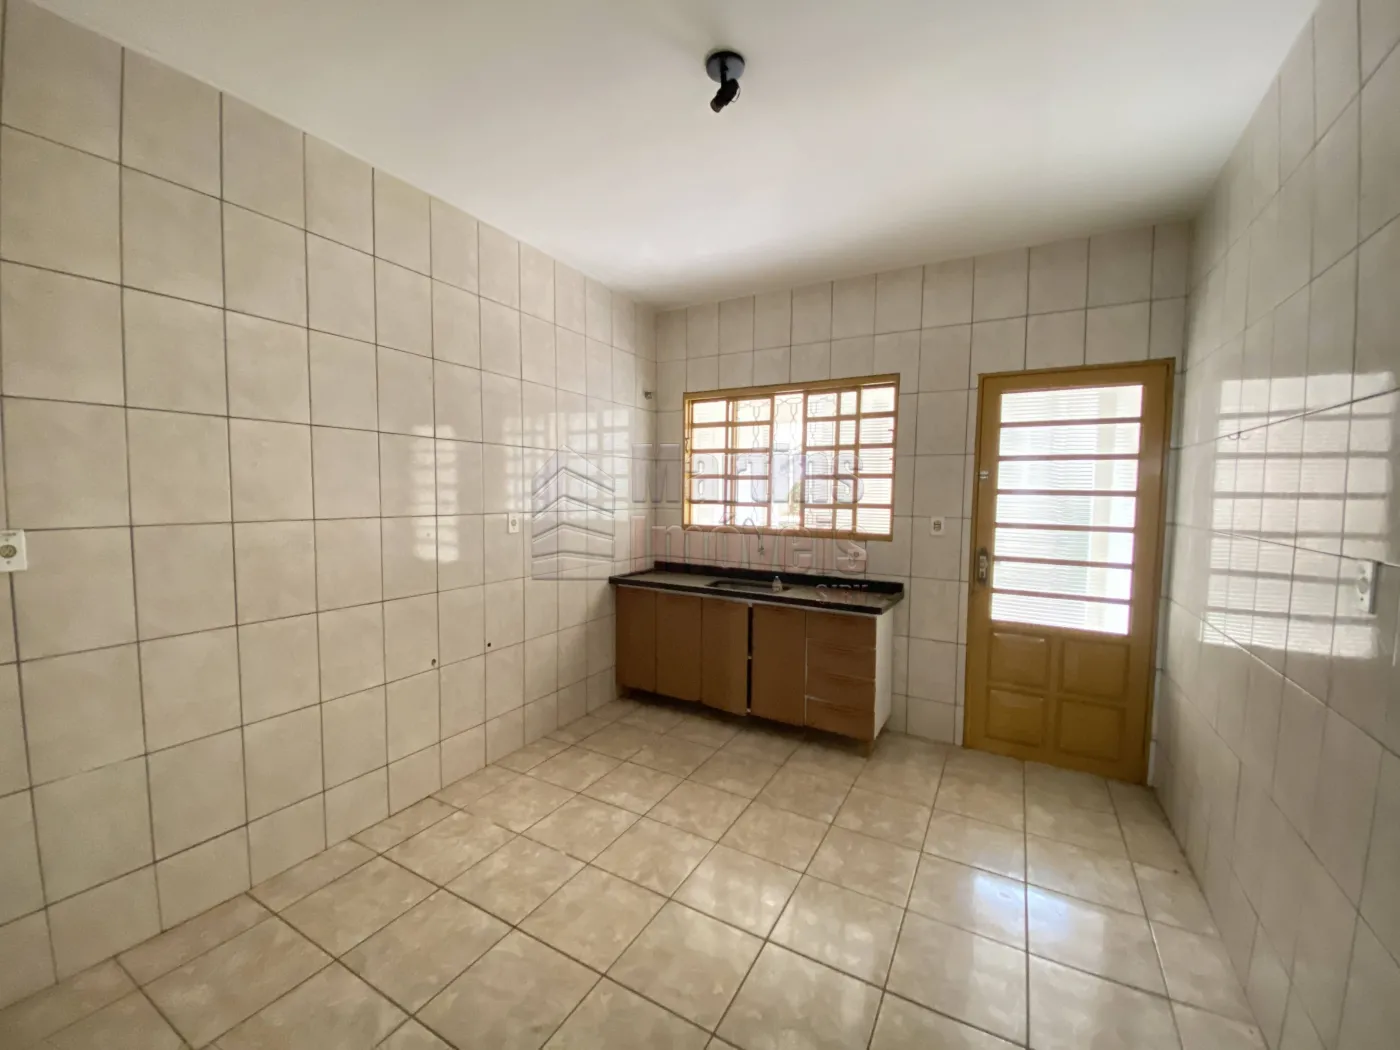 Alugar Casa / Padrão em São João da Boa Vista R$ 1.700,00 - Foto 12